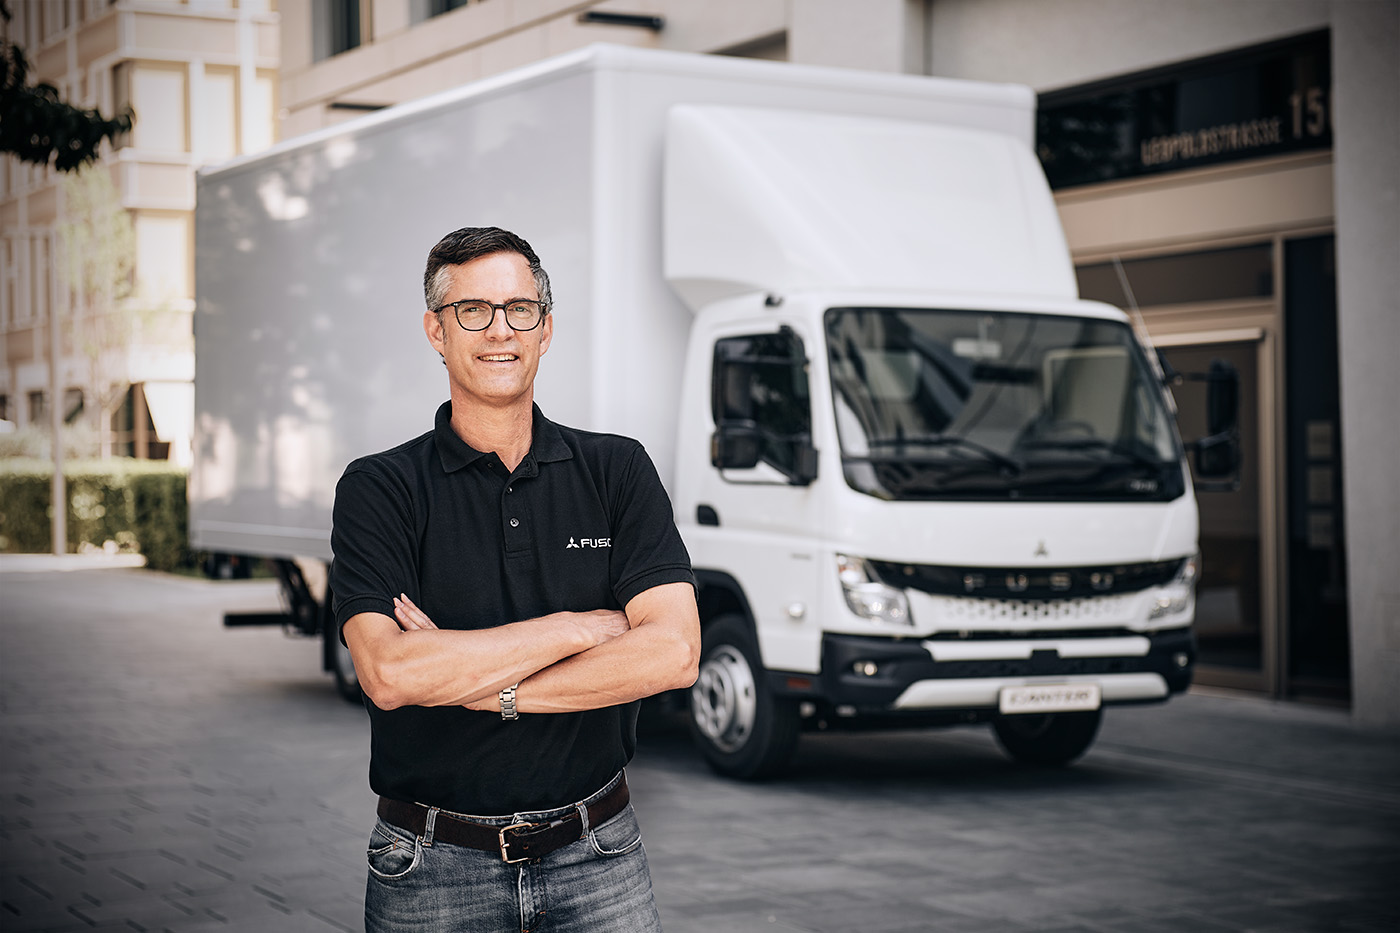 Wraz z FUSO Europe, marka i Canter otrzymały w Niemczech nową organizację sprzedaży około 20 lat temu jako część Daimler Trucks. Erk Roennefarth, obecnie szef działu marketingu i zarządzania produktem na Europę, jest związany z firmą od tamtego czasu i wie co nieco o egzotyce, pionierskiej pracy i miłości do Canter.